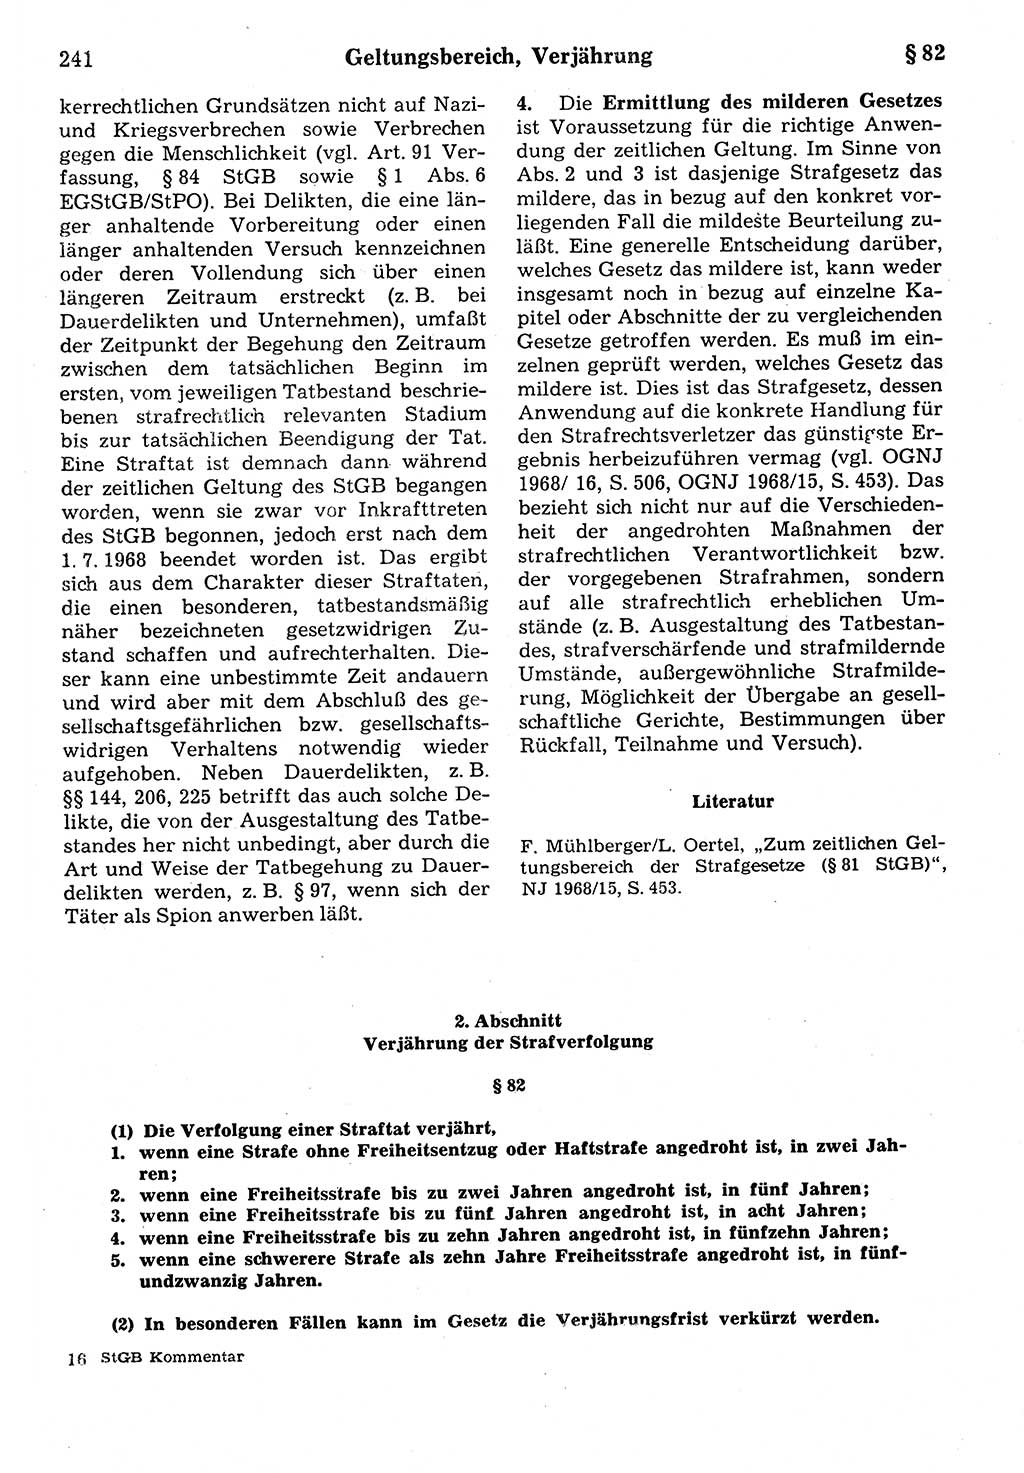 Strafrecht der Deutschen Demokratischen Republik (DDR), Kommentar zum Strafgesetzbuch (StGB) 1987, Seite 241 (Strafr. DDR Komm. StGB 1987, S. 241)